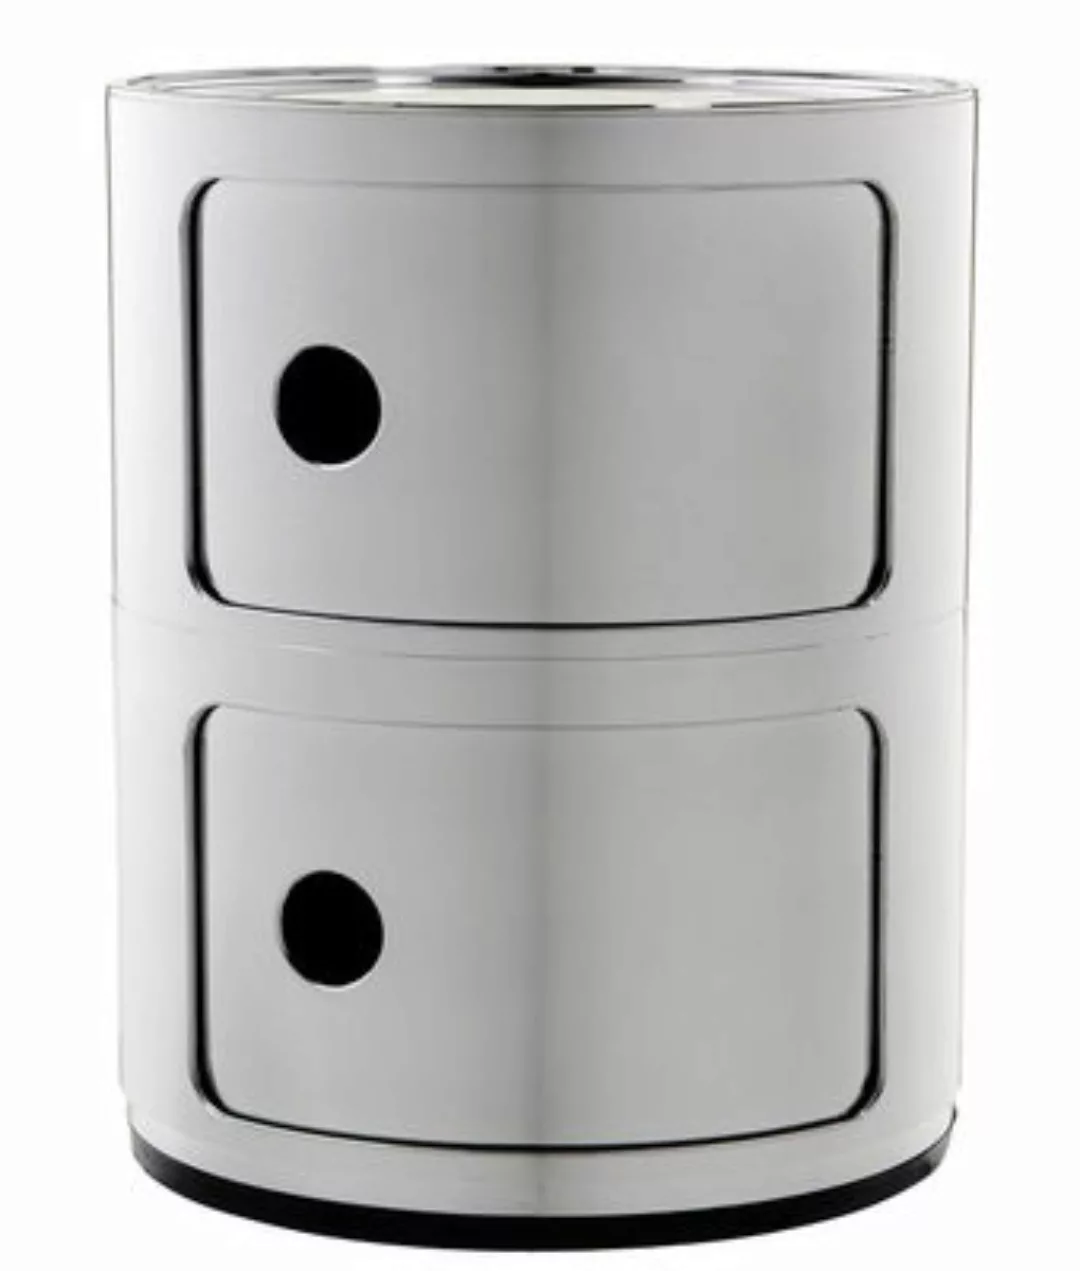 Kartell - Componibili 2 Metallic Container - chrom/glänzend/H 40cm/ Ø 32cm günstig online kaufen